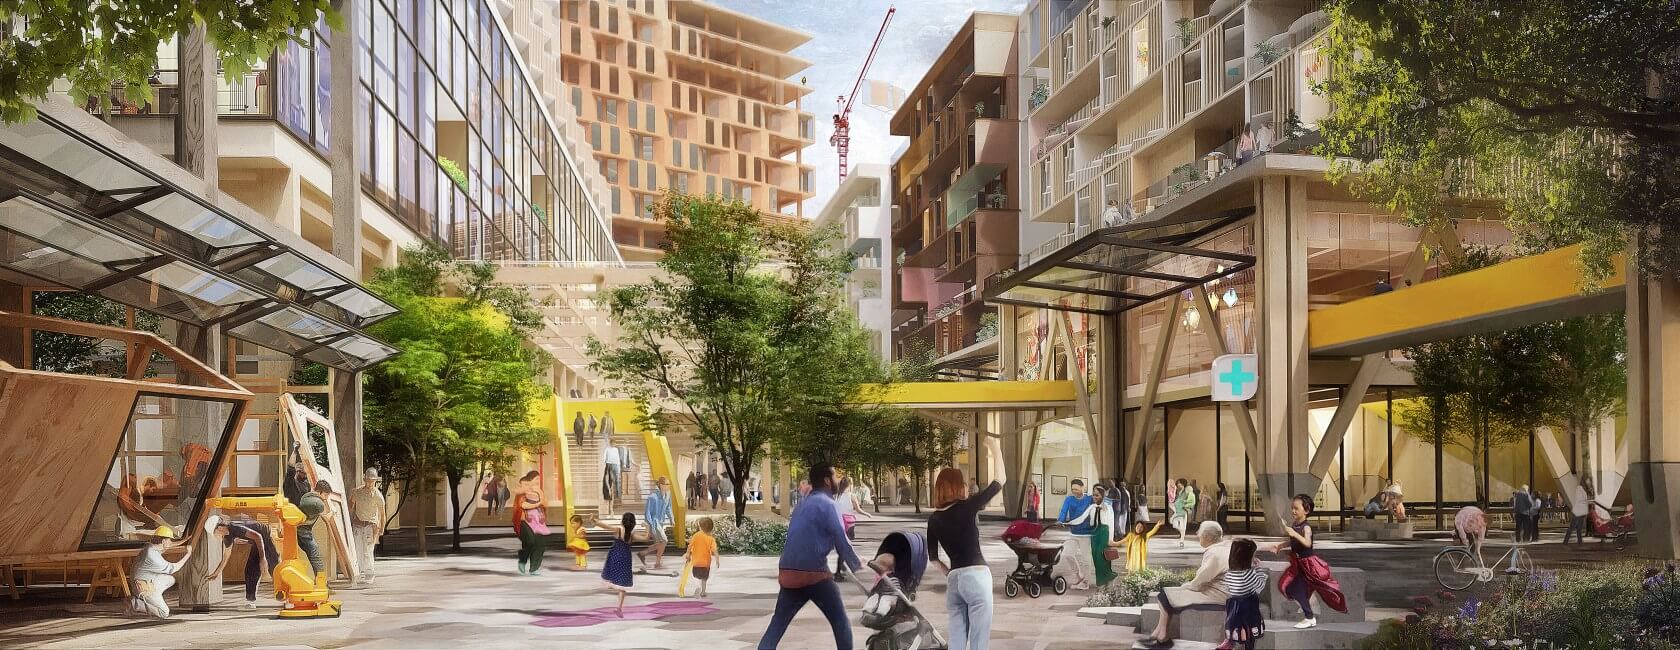 Alphabet's Sidewalk Labs abandons its Toronto smart neighborhood project 2